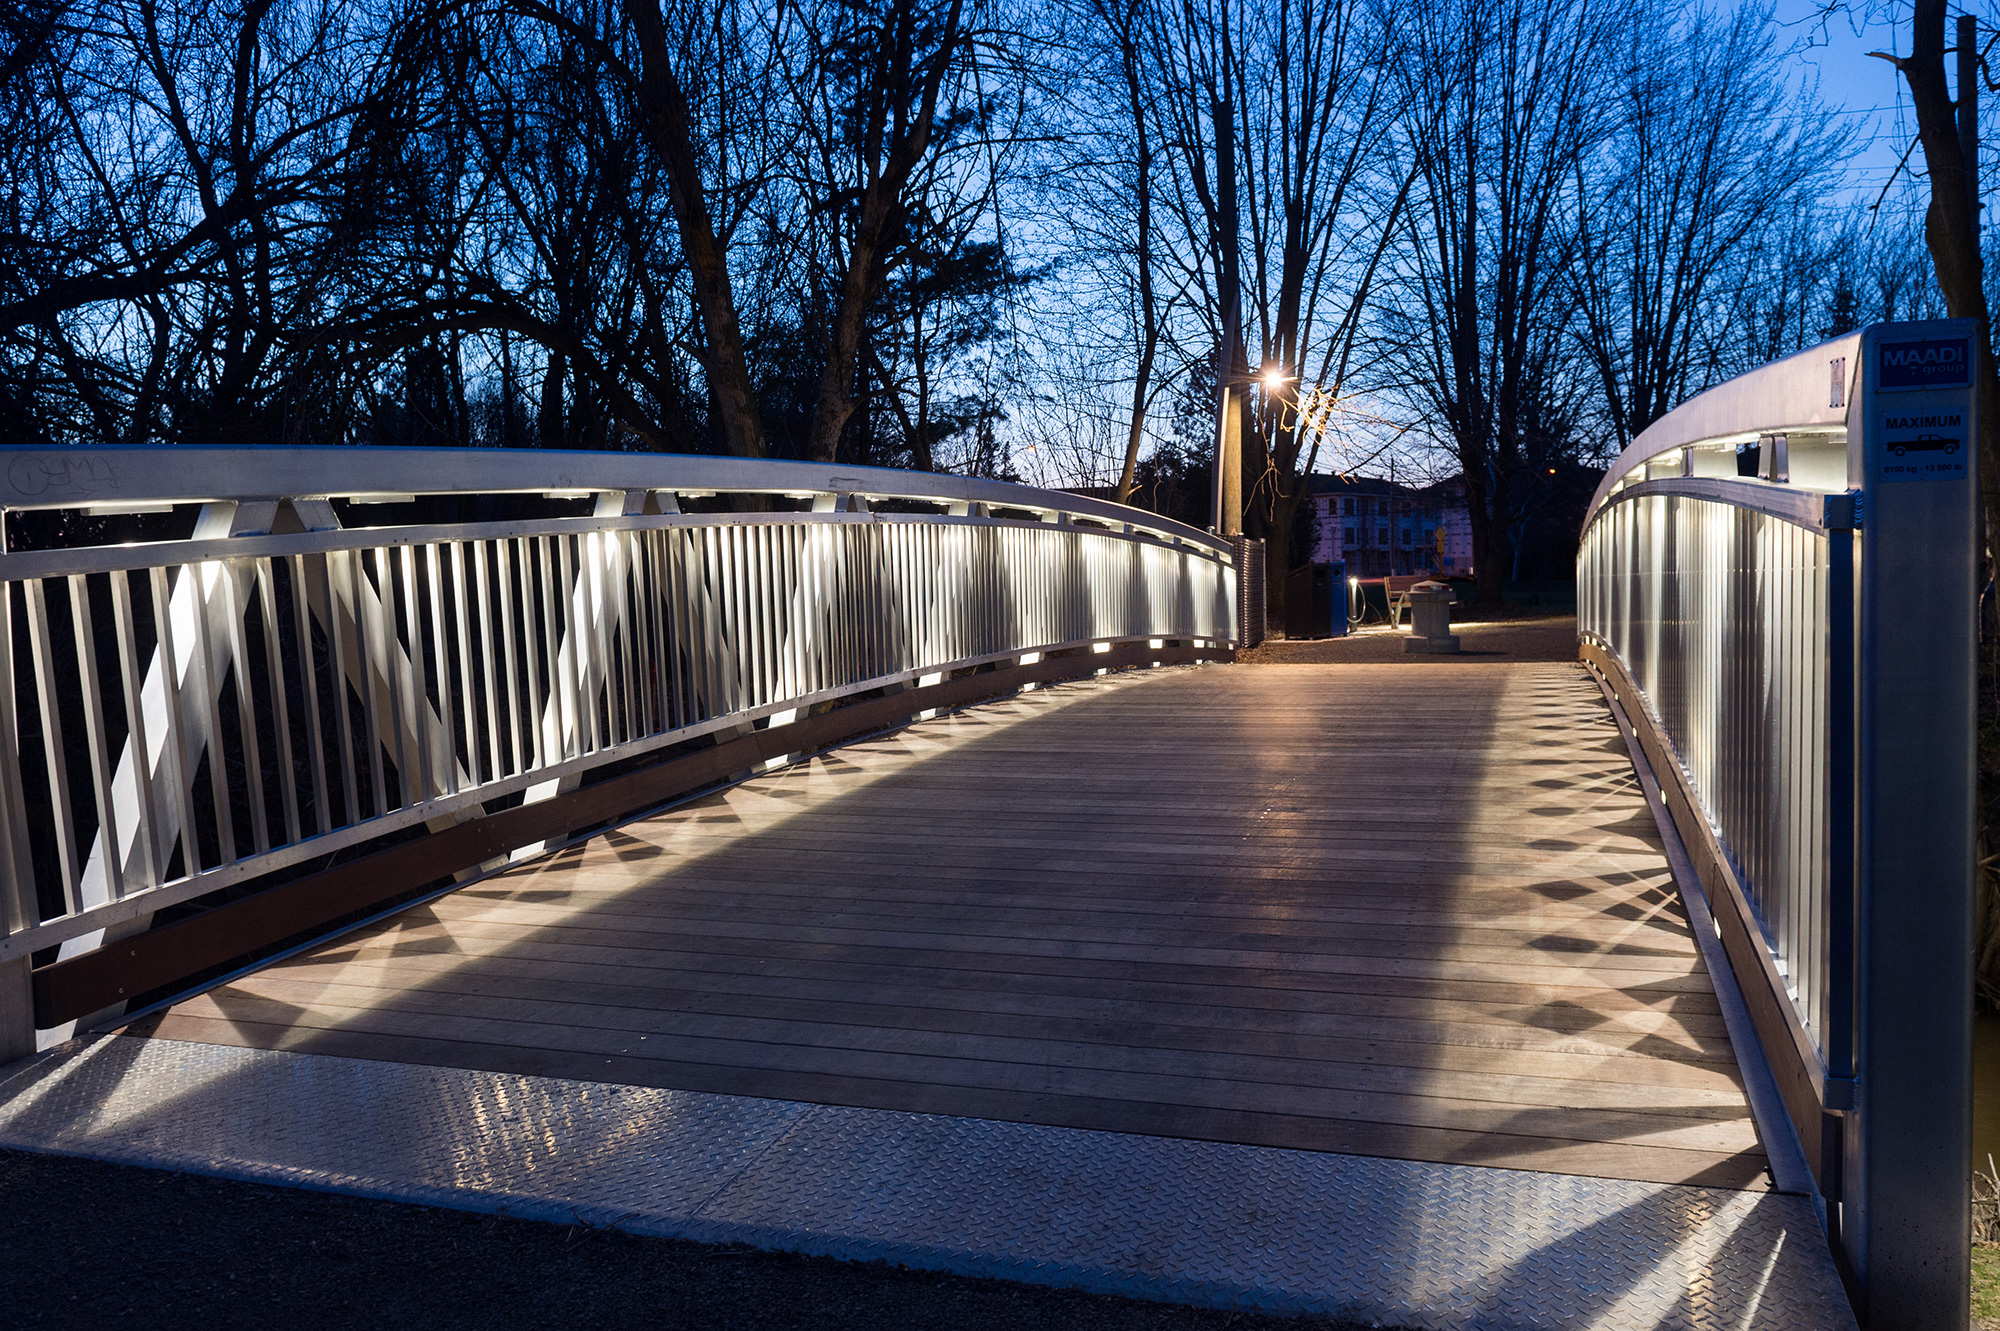 Custom aluminum pedestrian bridge with hardwood decking and built-in LED lighting in Quebec, Canada